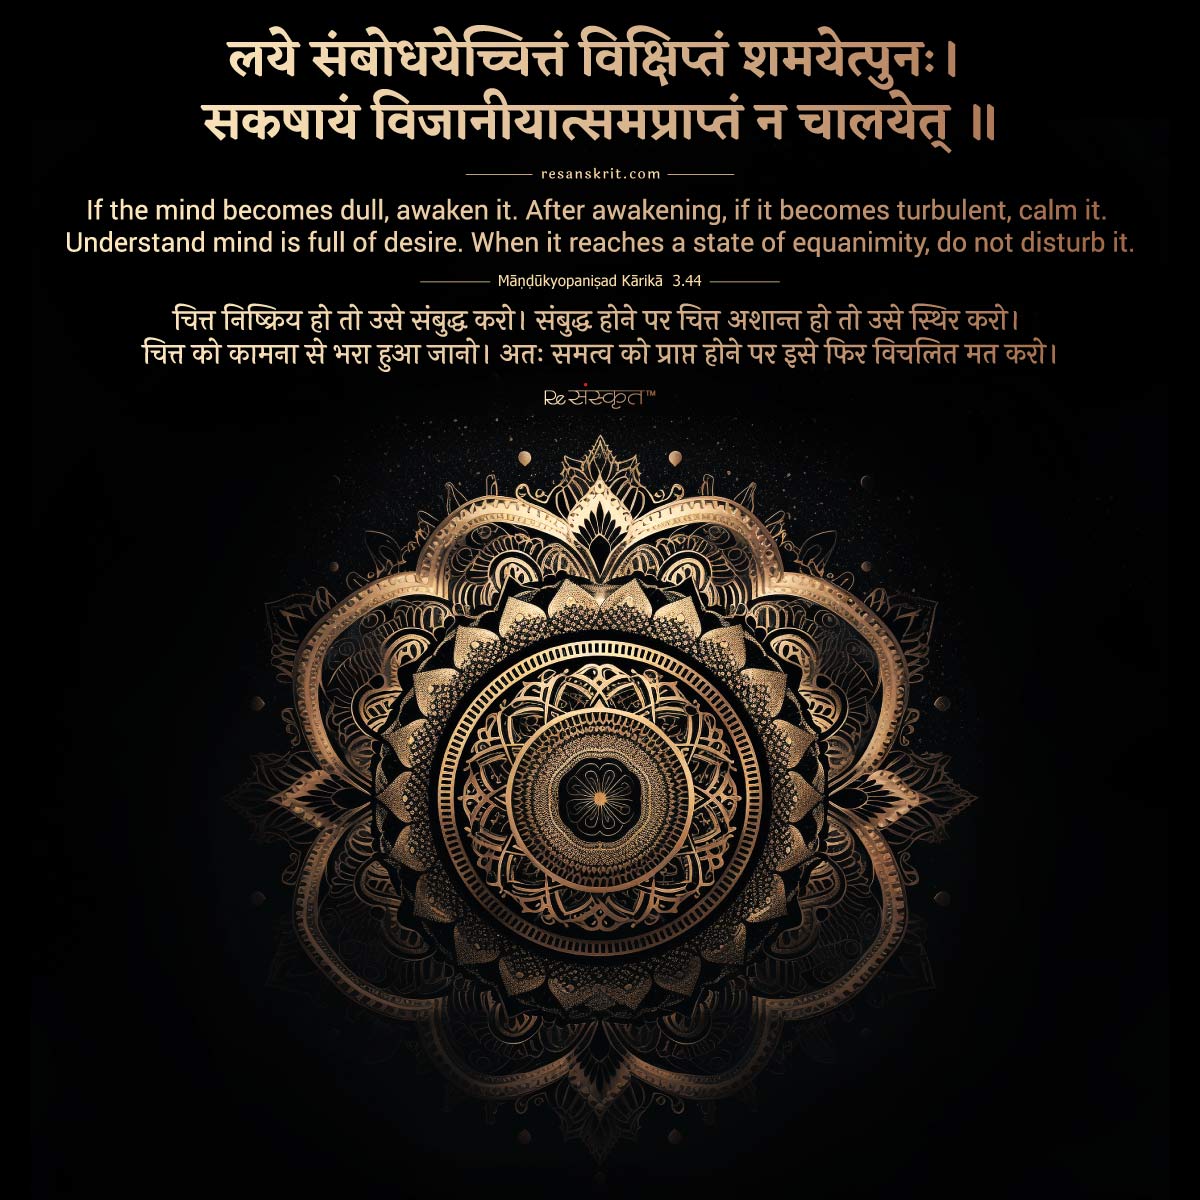 Sanskrit quote on mind